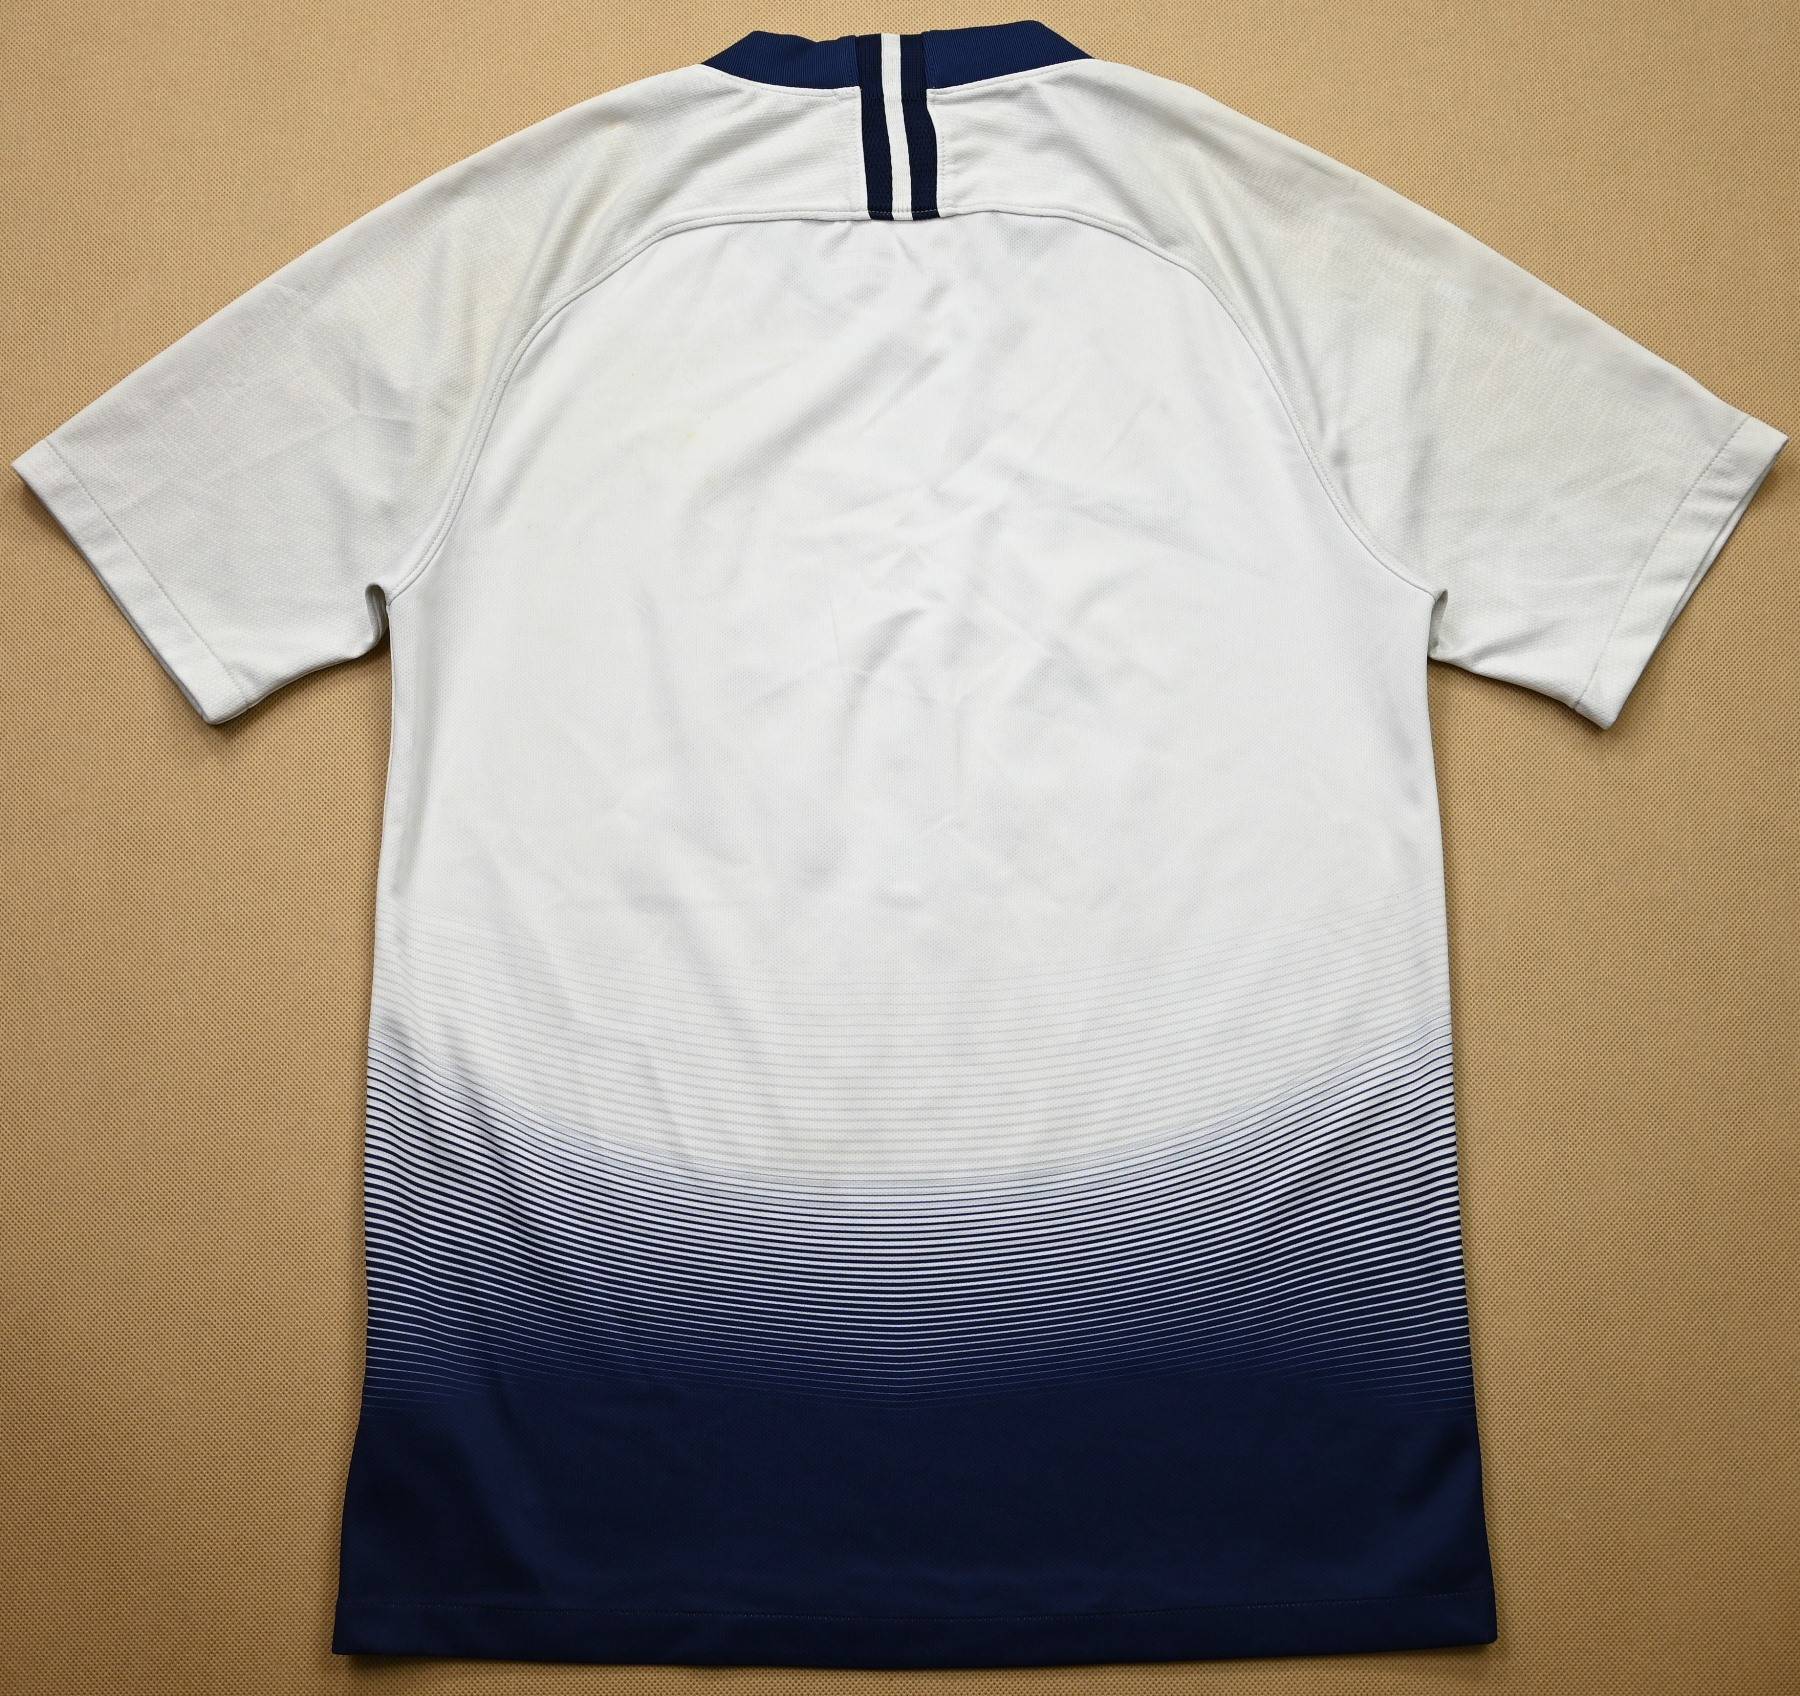 Nike 2018-19 Tottenham Hotspur Shirt S S